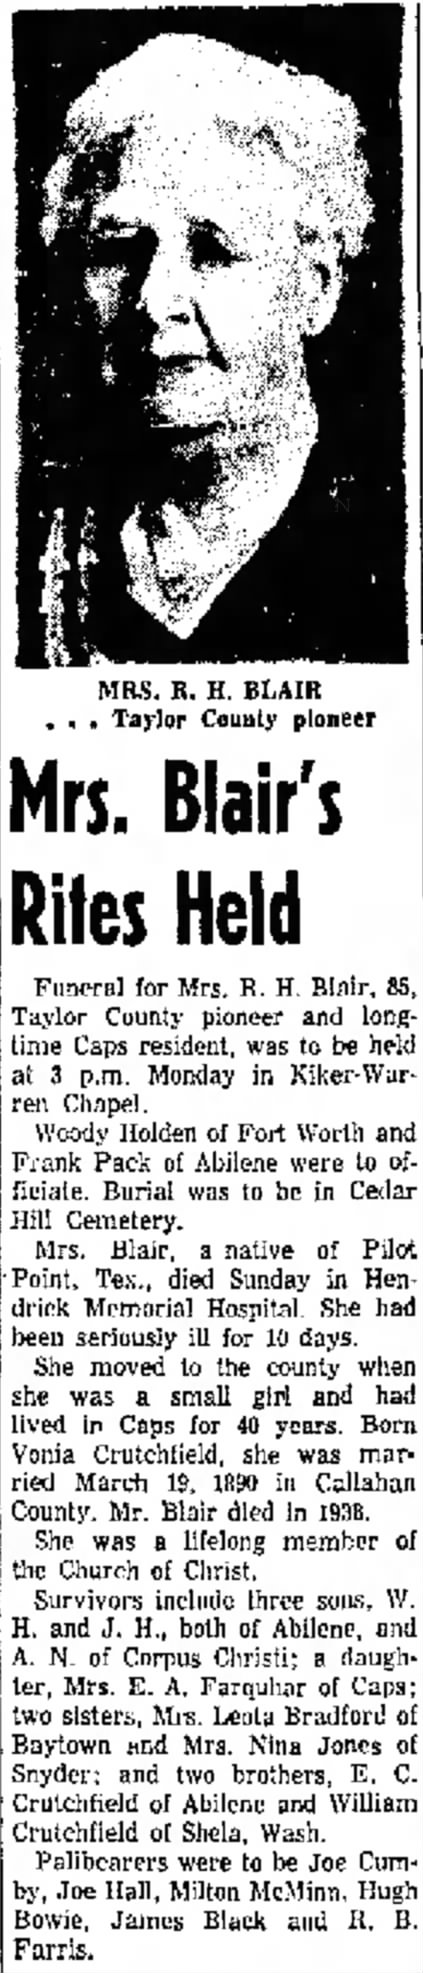 Mrs. R H Blair Dies
23 January 1956